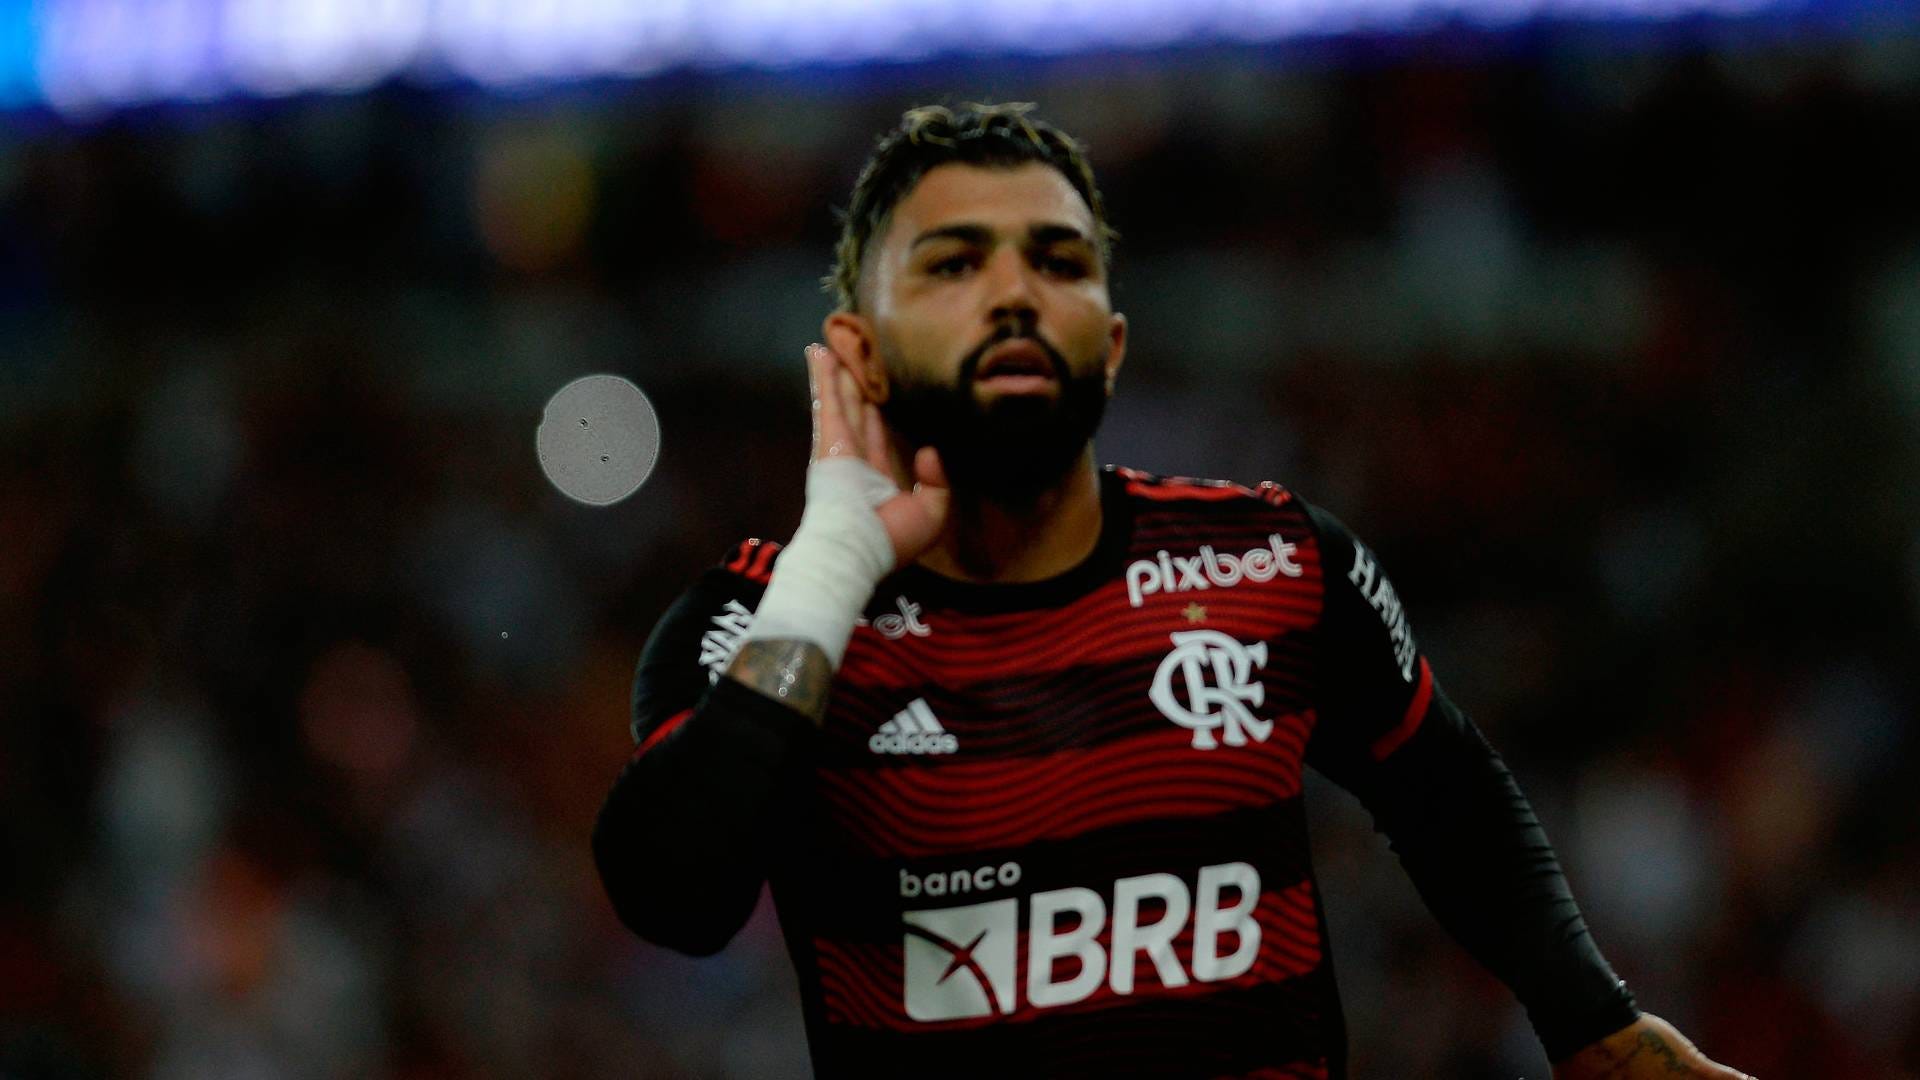 Universidad Católica x Flamengo: escalação, desfalques e mais do